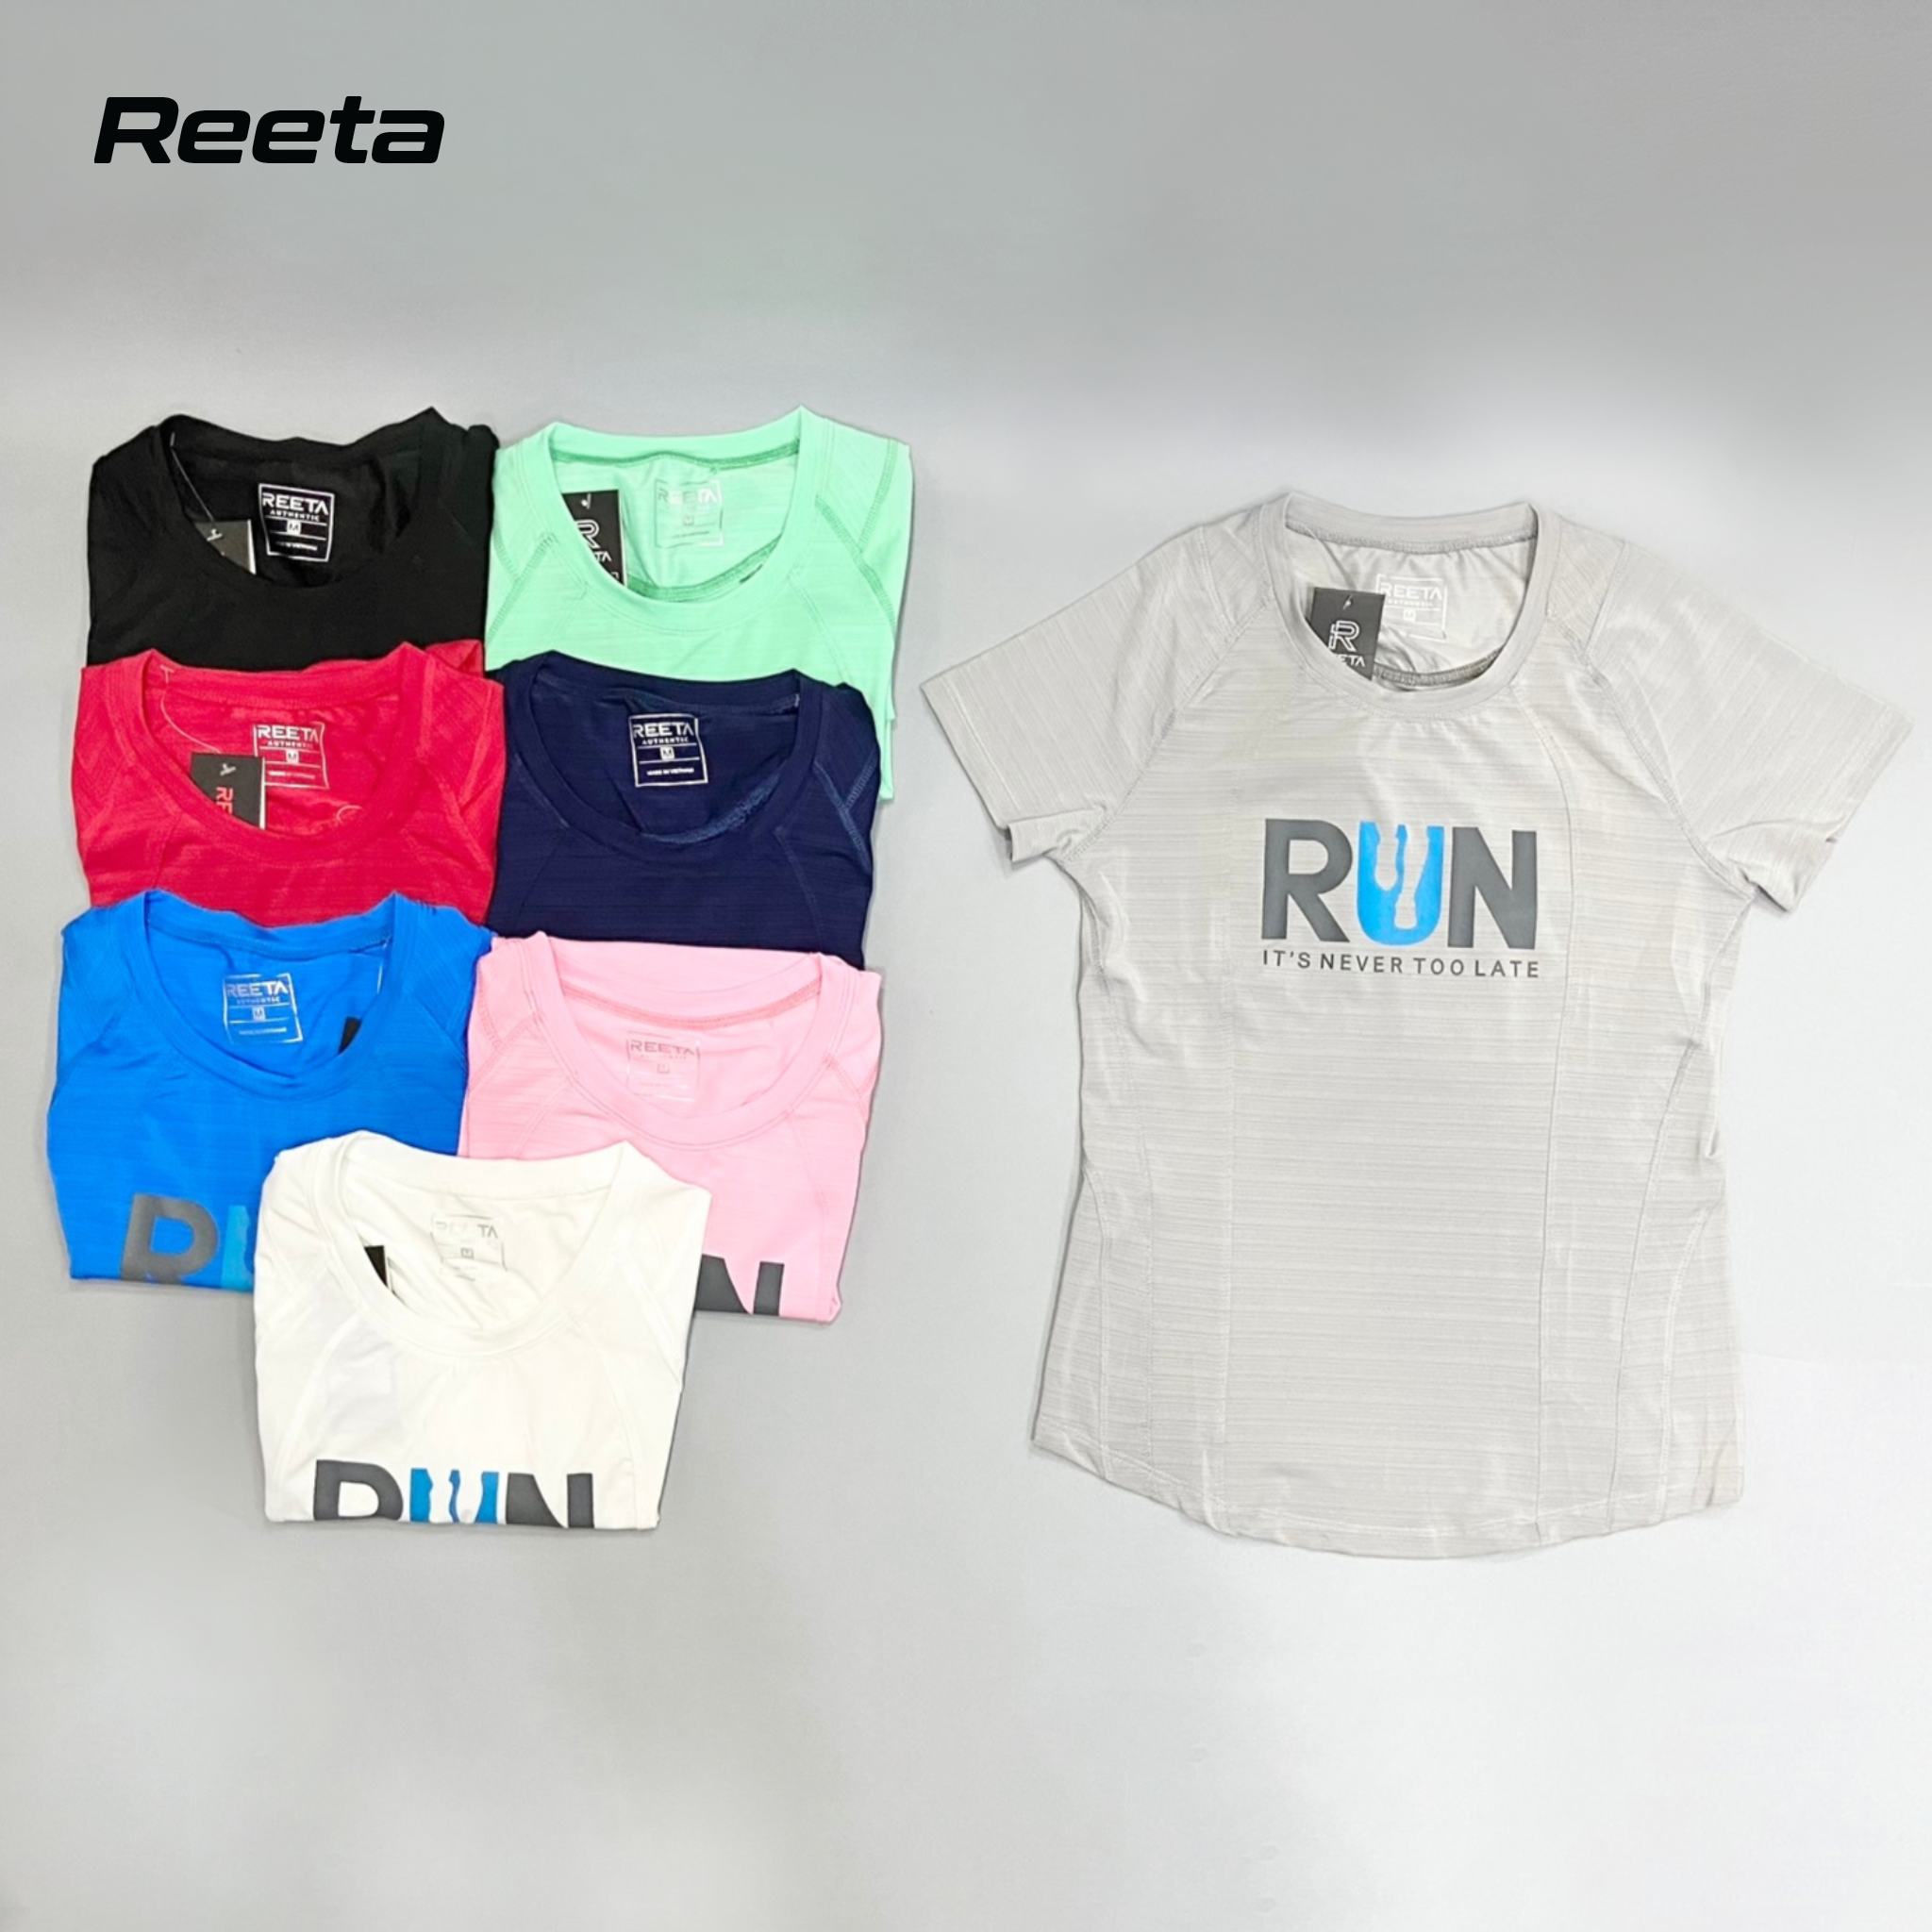 Áo thun thể thao Nữ REETA dáng thể thao năng động, thoải mái tập gym và yoga có hoạ tiết chữ RUN nổi bật - A1800